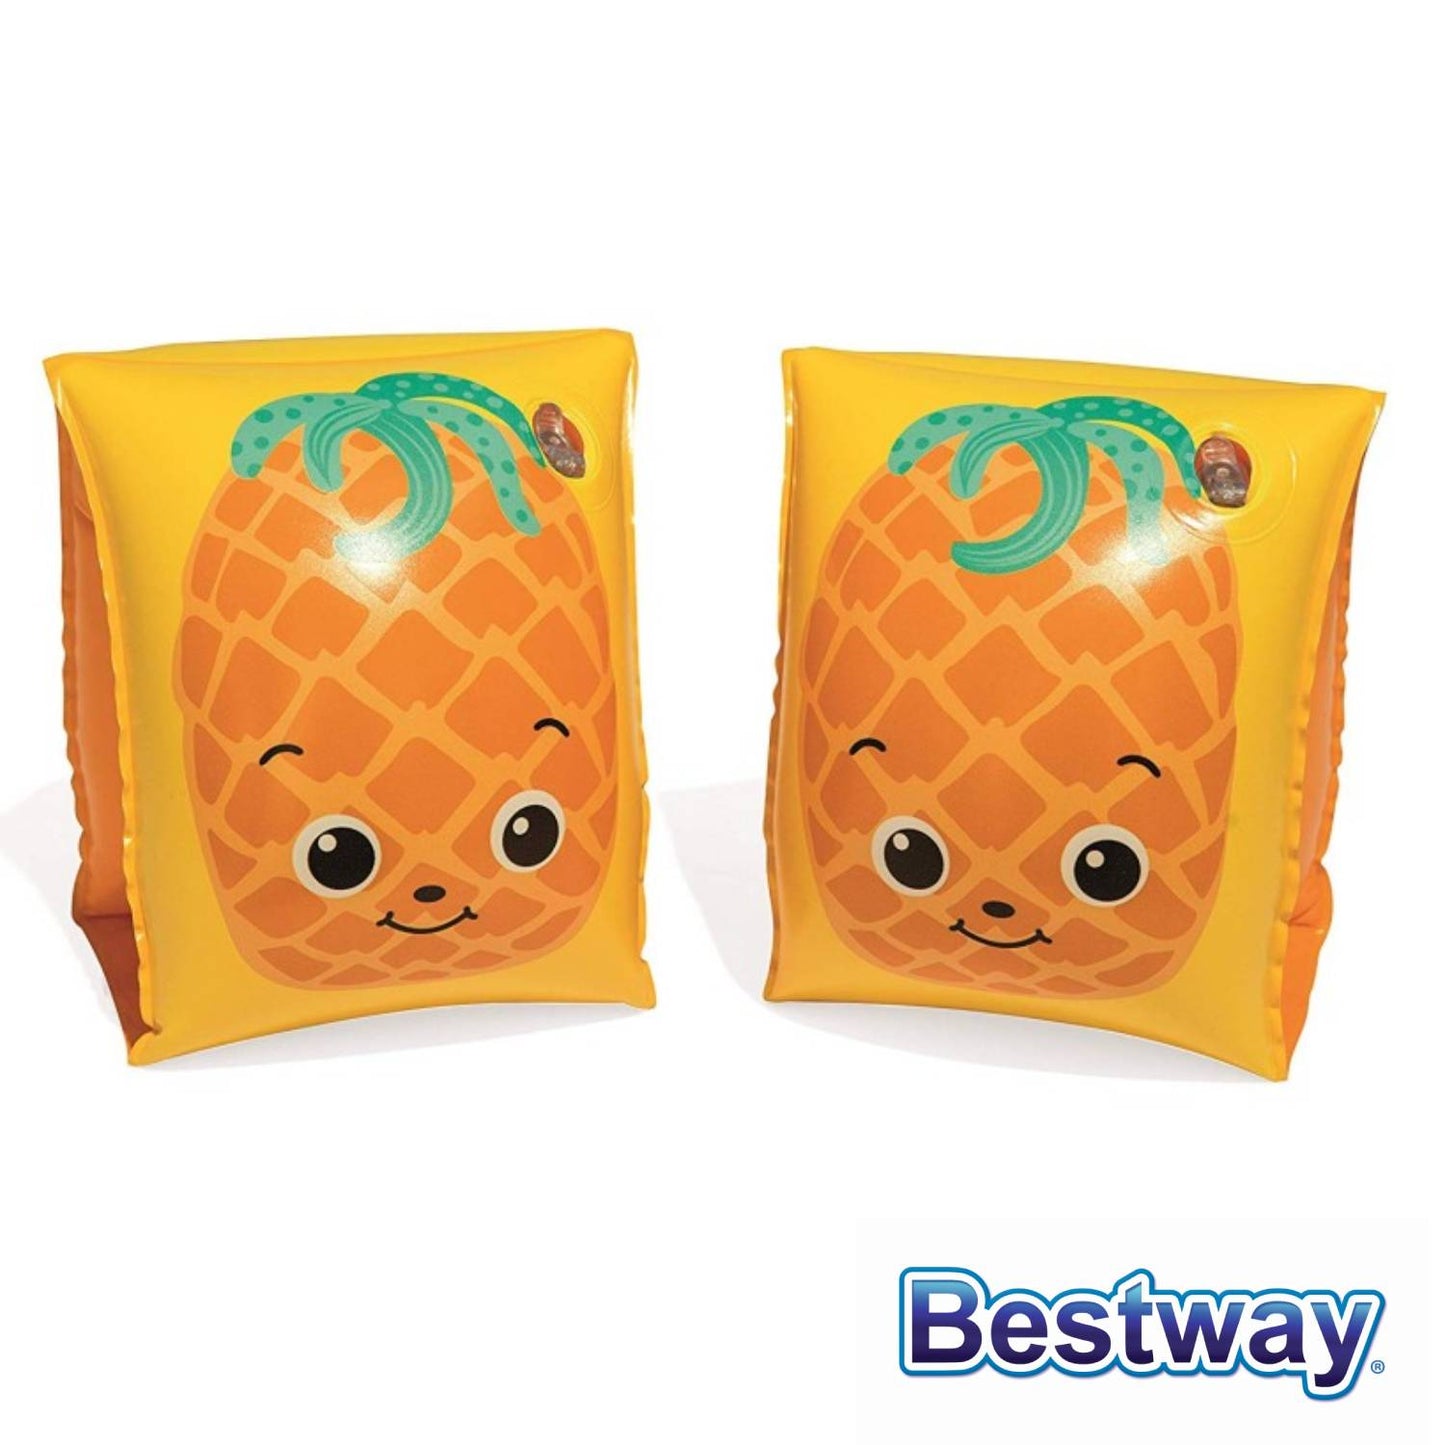 Bestway - Braccioli Frutta Cm. 23X15, Fragola E Ananas